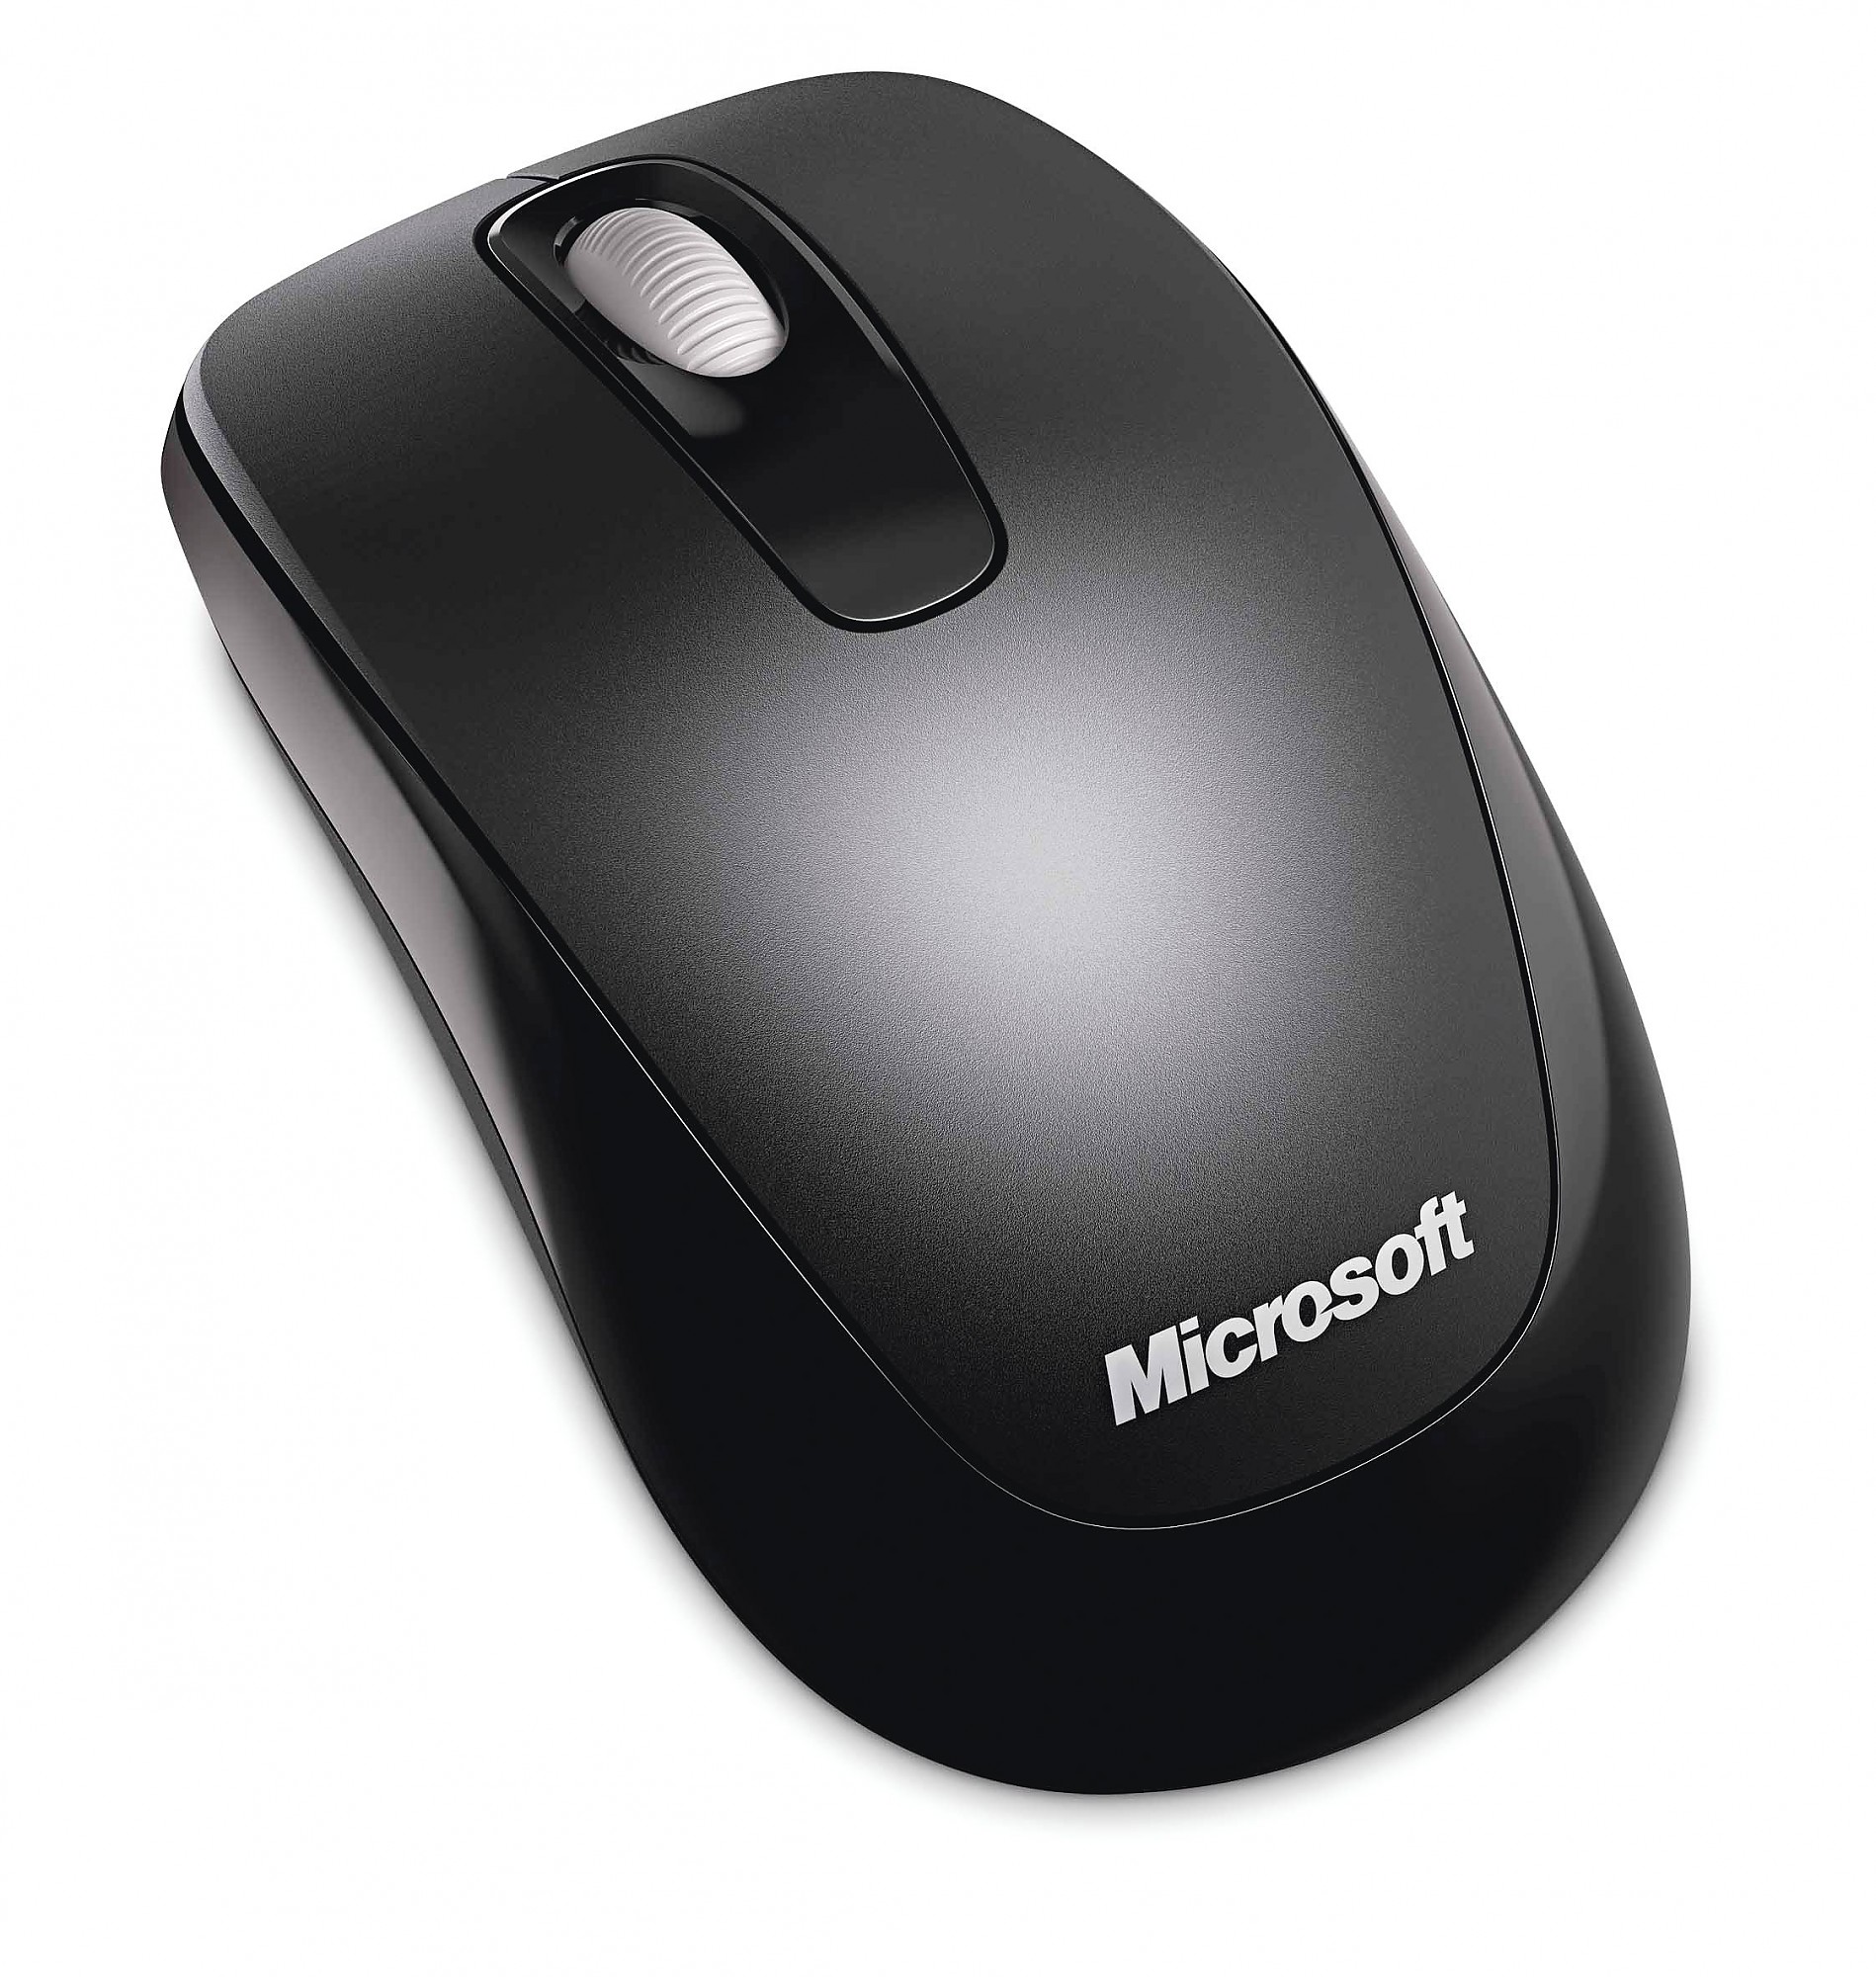 www.pocketbike.it - Wireless Mobile Mouse 1000 Microsoft ...